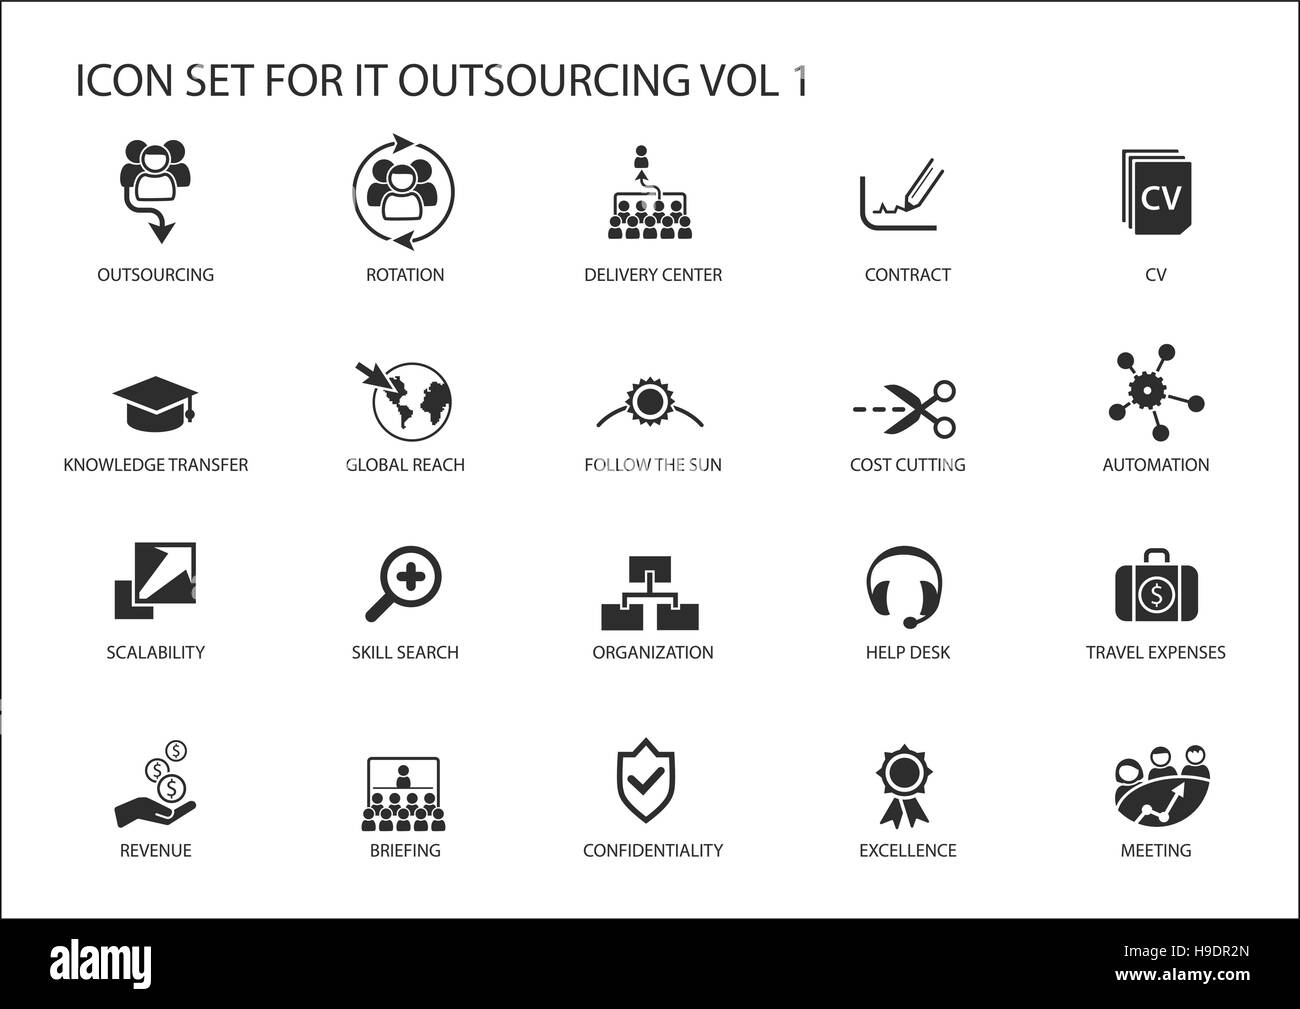 Varie IT outsourcing e offshore modello icone vettoriali globale in un modello operativo Illustrazione Vettoriale